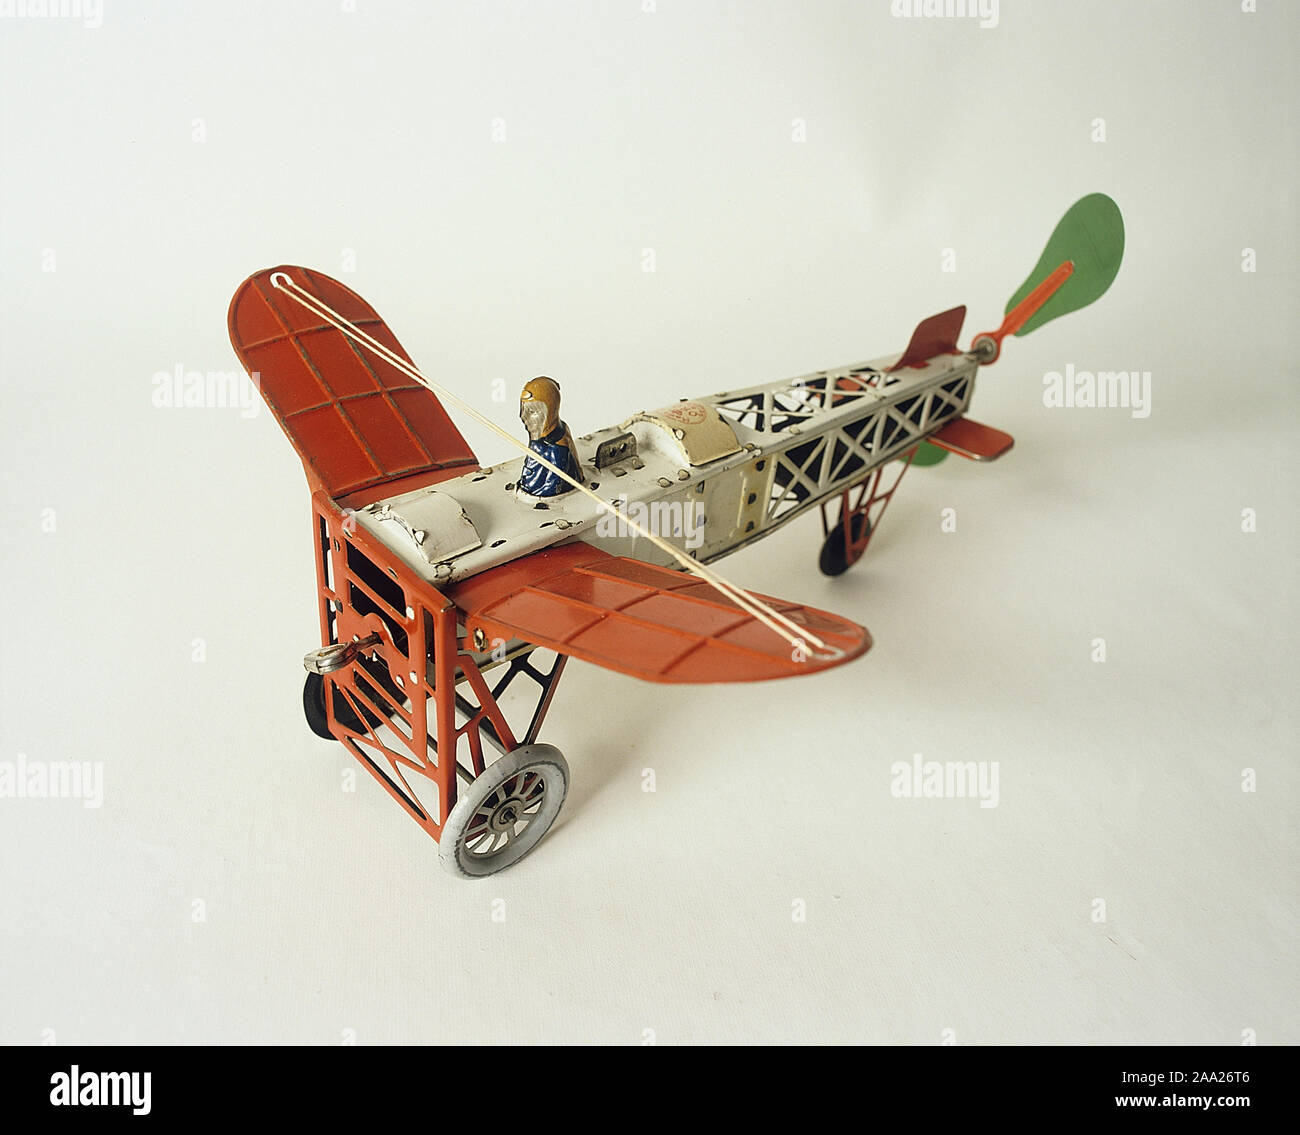 Jouets pour enfants du passé. Tin toy airplane qui était populaire au tournant du siècle, 1800-1900. Mais le plaisir simple des jouets qui étaient bon marché pour acheter. Ils sont maintenant à percevoir et peut être très utile. Fabricants de jouets allemande a dominé le début de la production de jouets. Banque D'Images